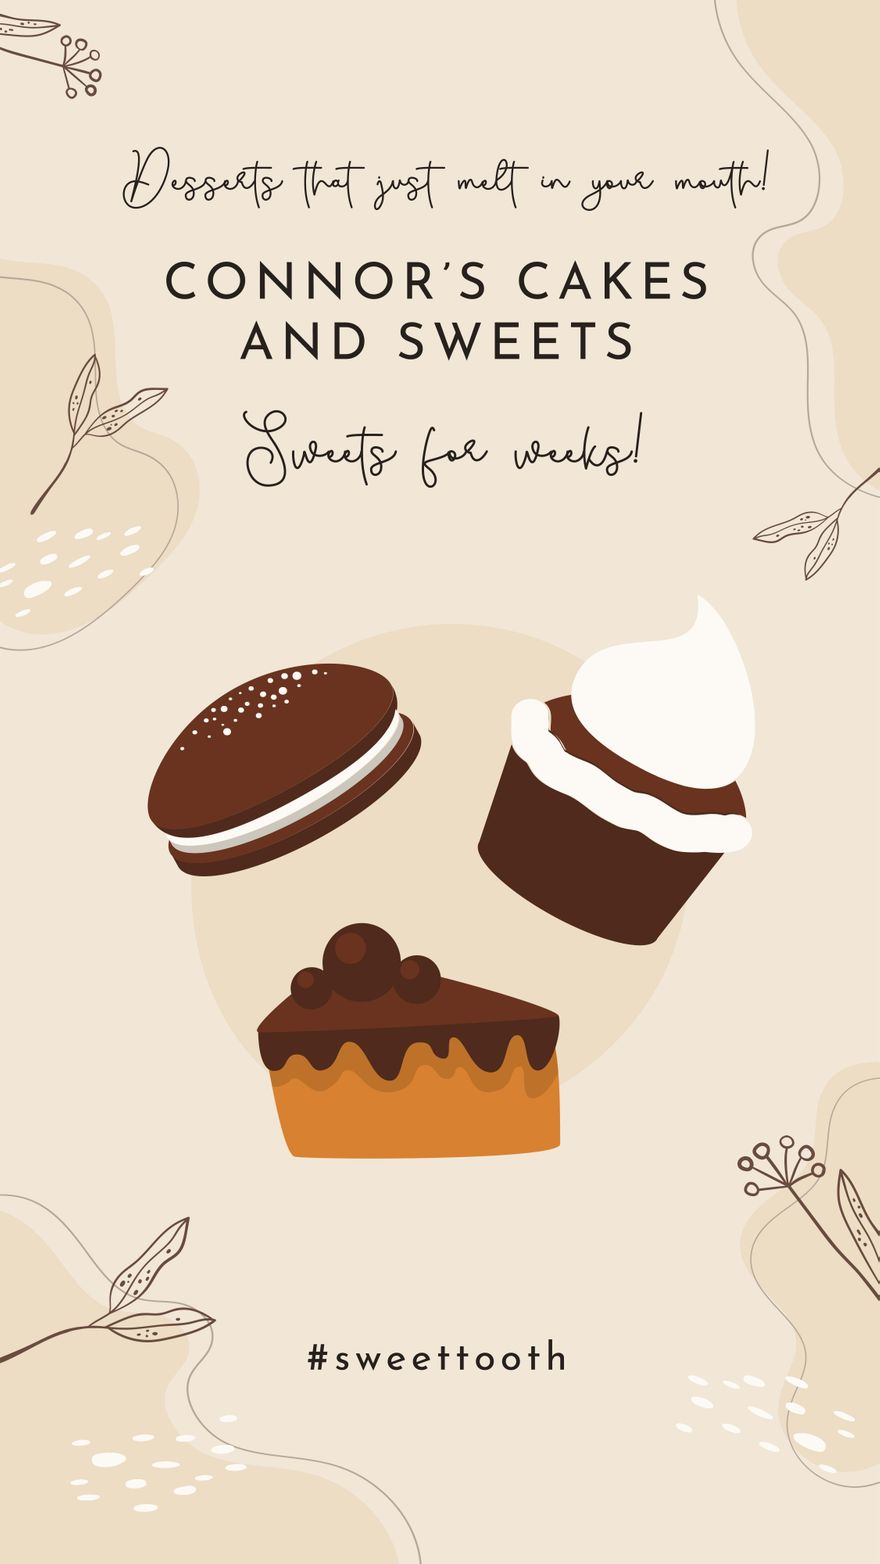 FREE Food Instagram Template Download in Illustrator, JPG